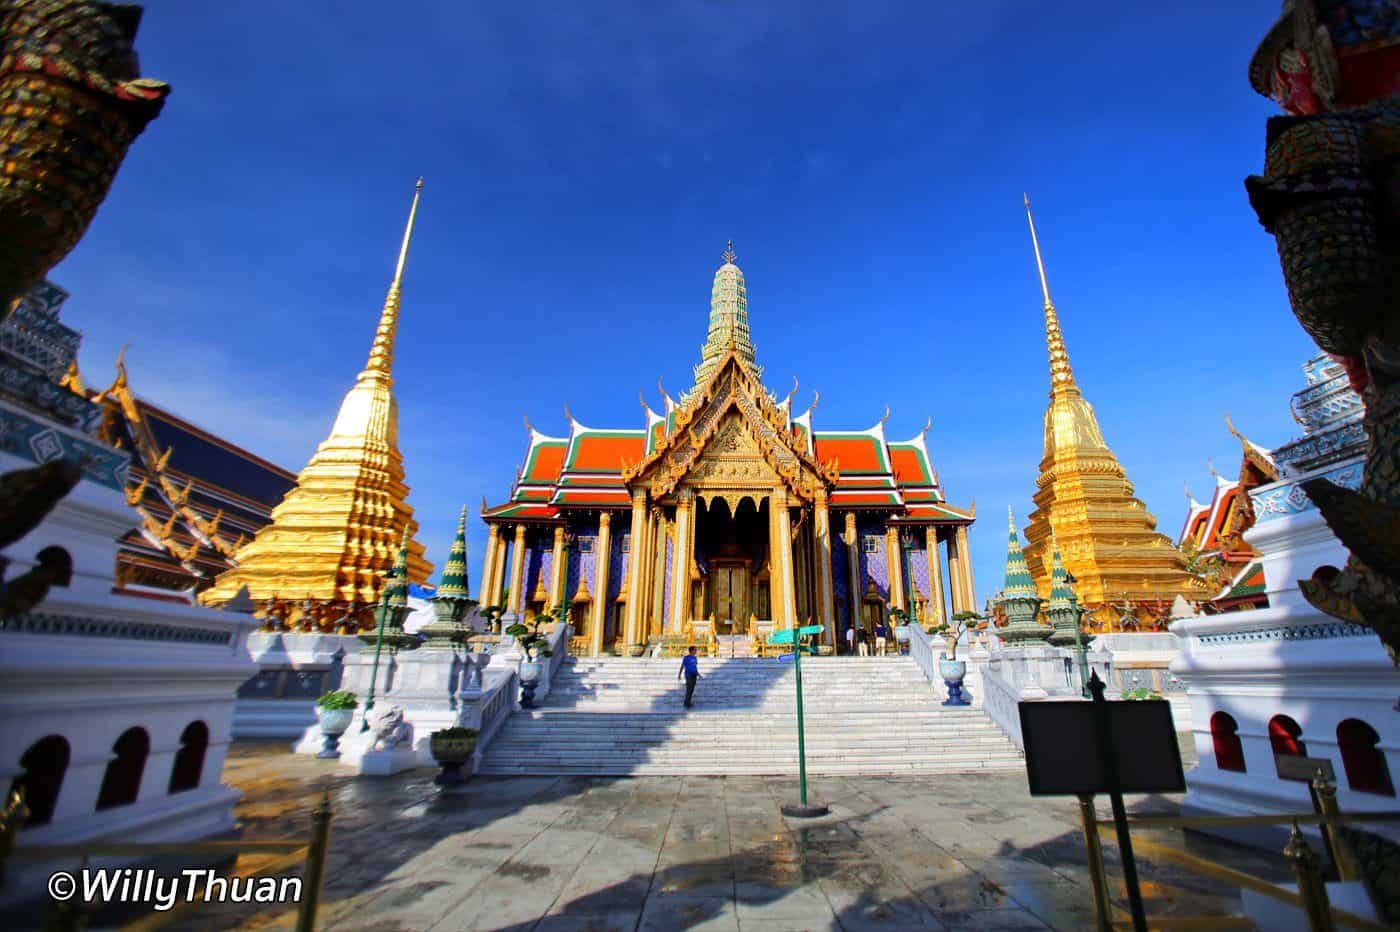 The Grand Palace & Wat Phra Kaew (Emerald Buddha Temple)